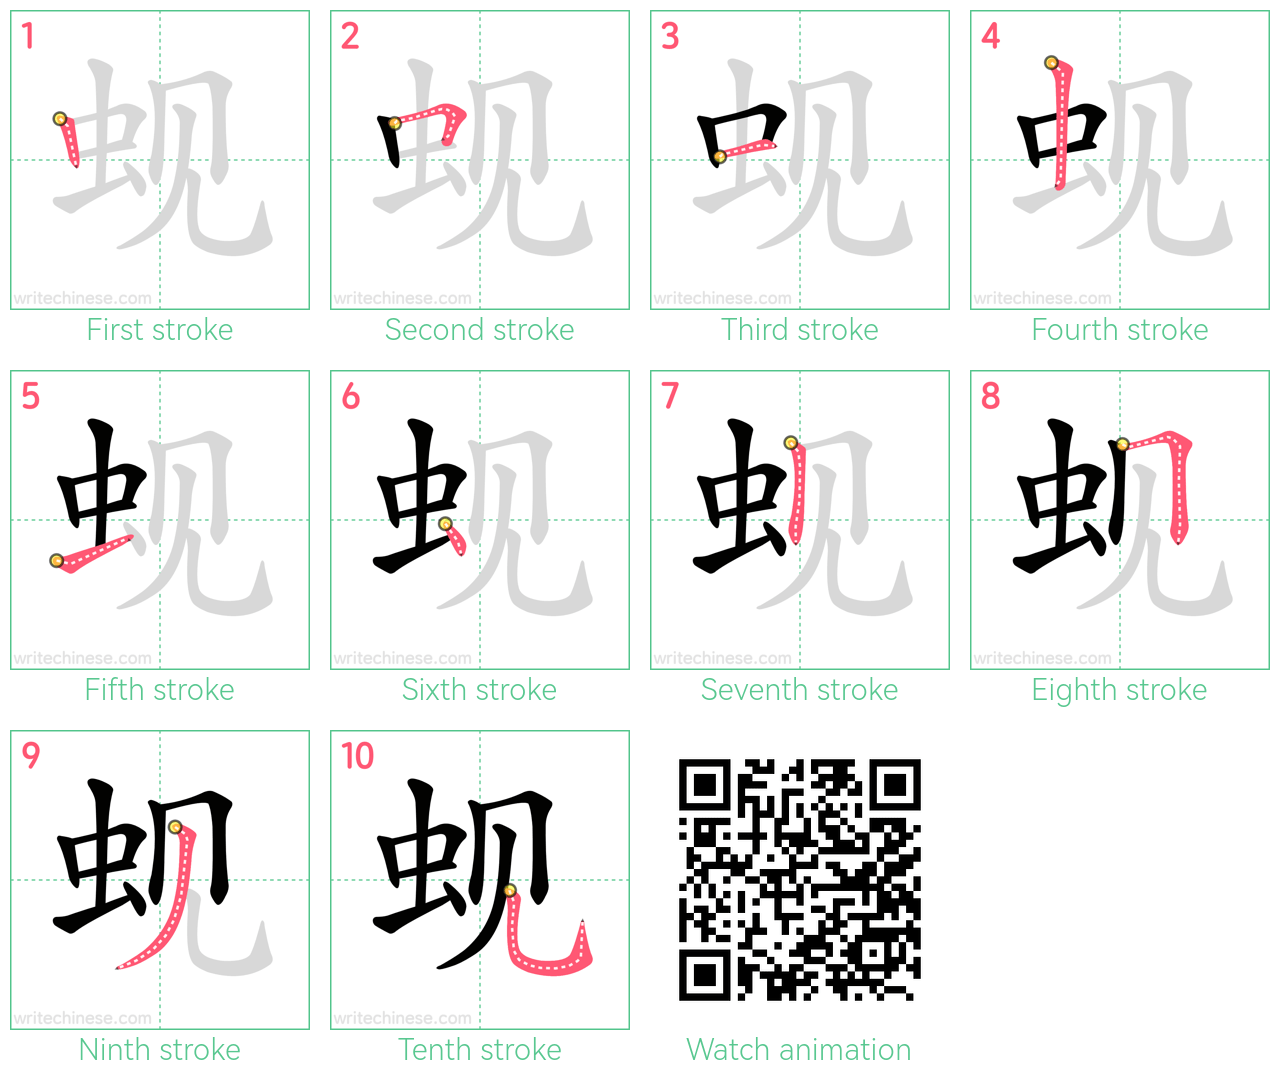 蚬 step-by-step stroke order diagrams